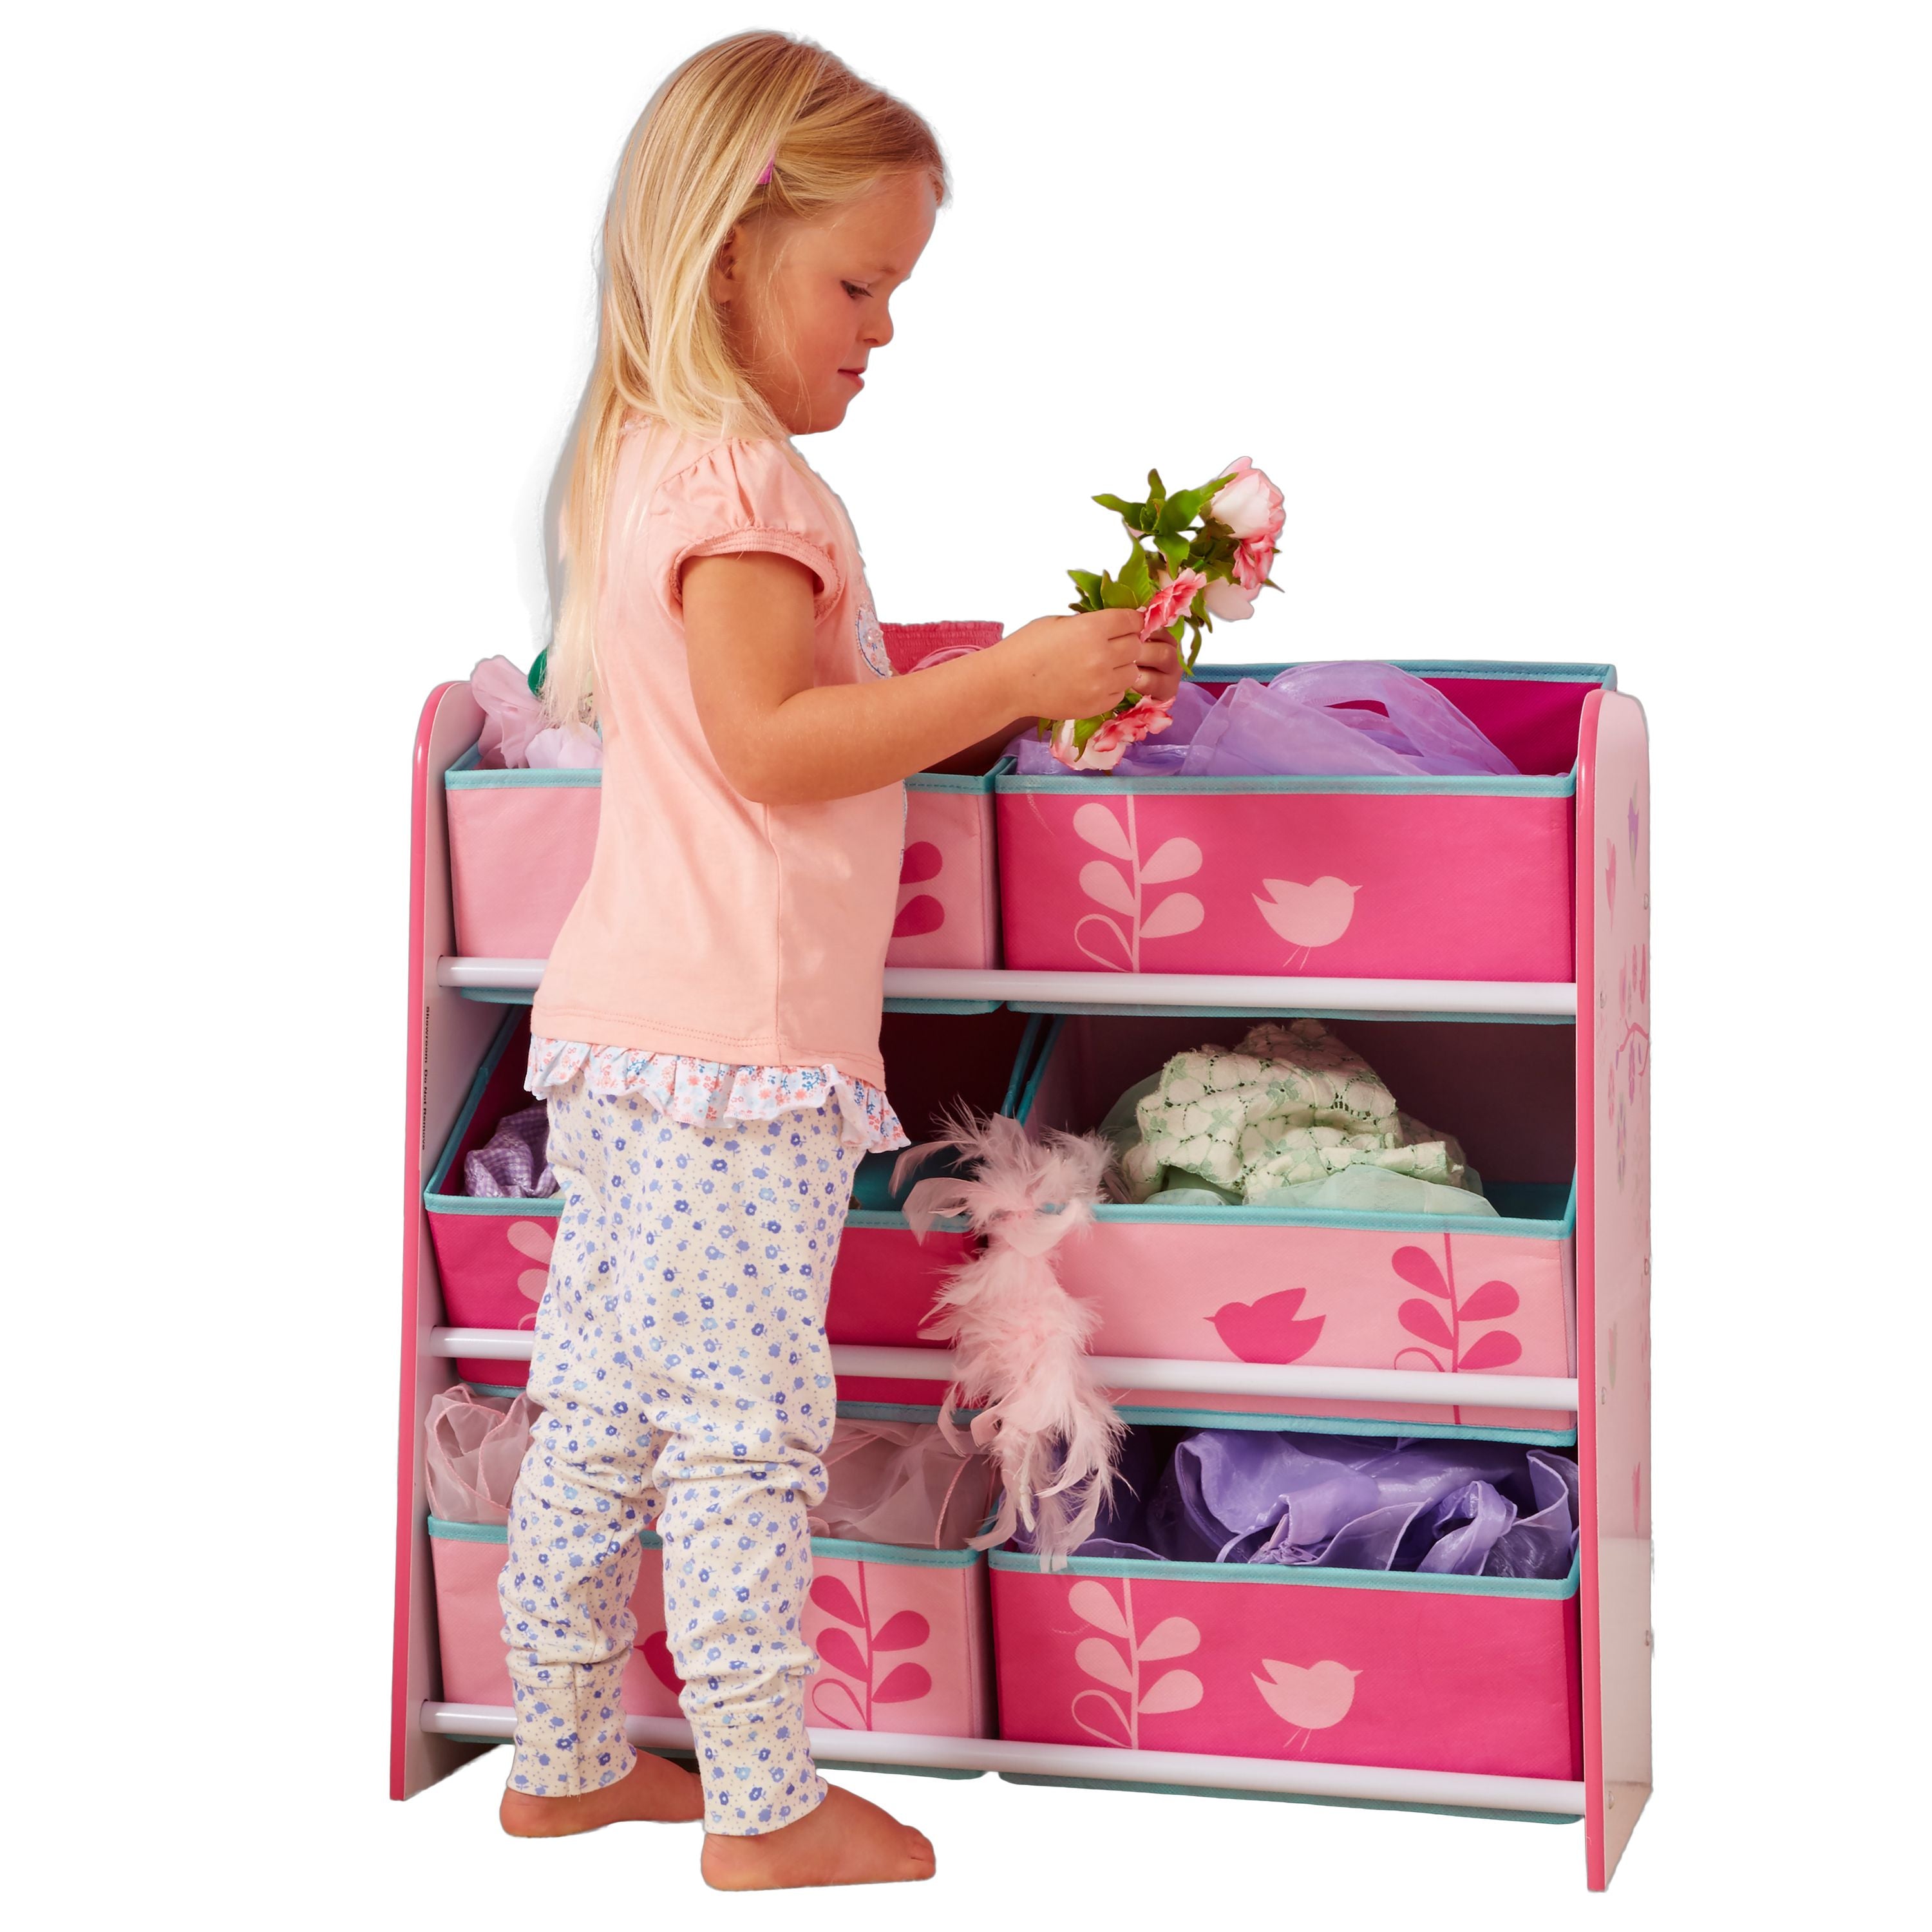 Blumen und Vögel - Regal zur Spielzeugaufbewahrung mit 6 Kisten für Kinder